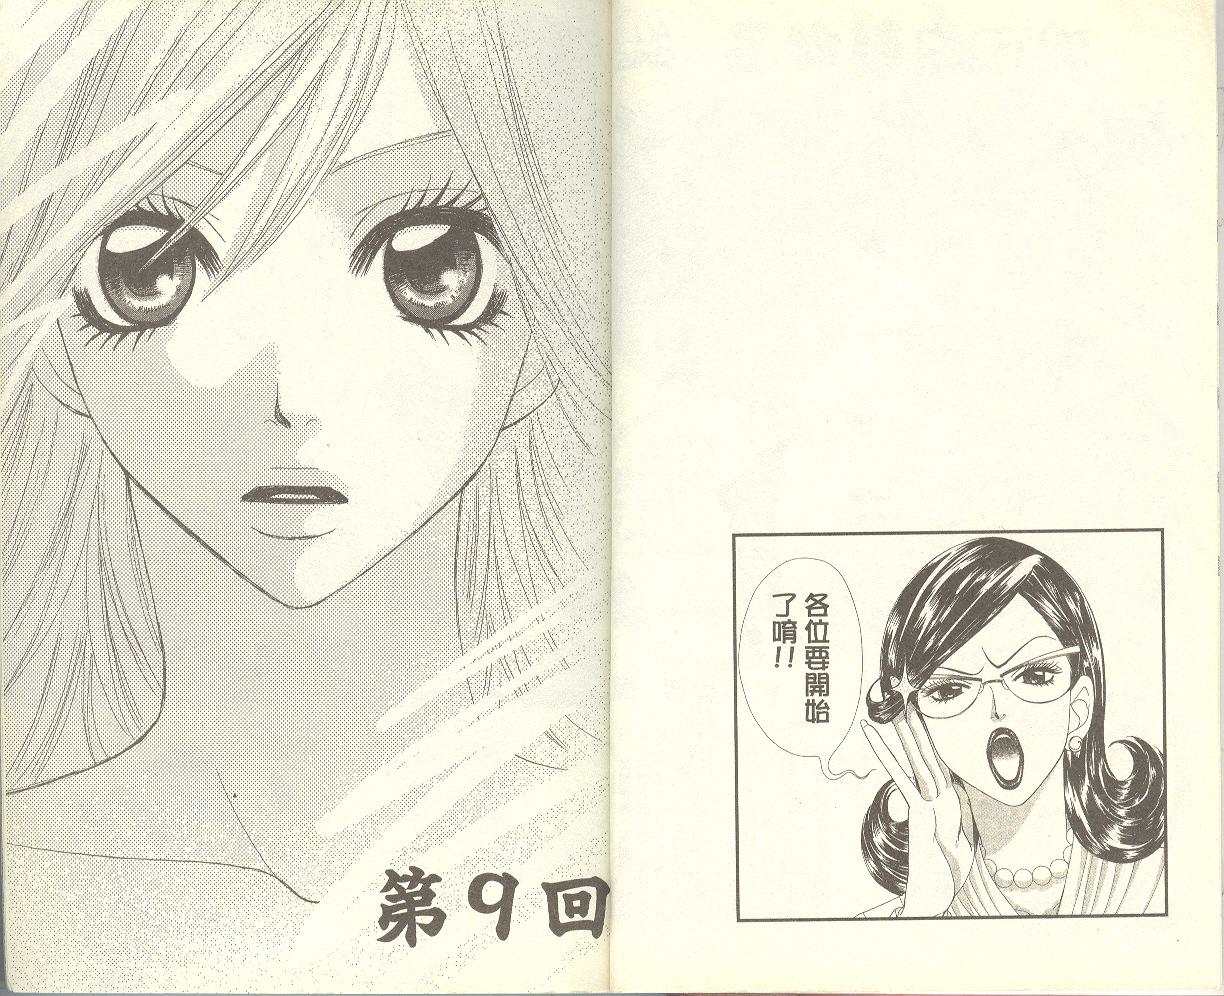 美人坂女子高校 第三卷 漫畫線上看 動漫戲說 Acgn Cc